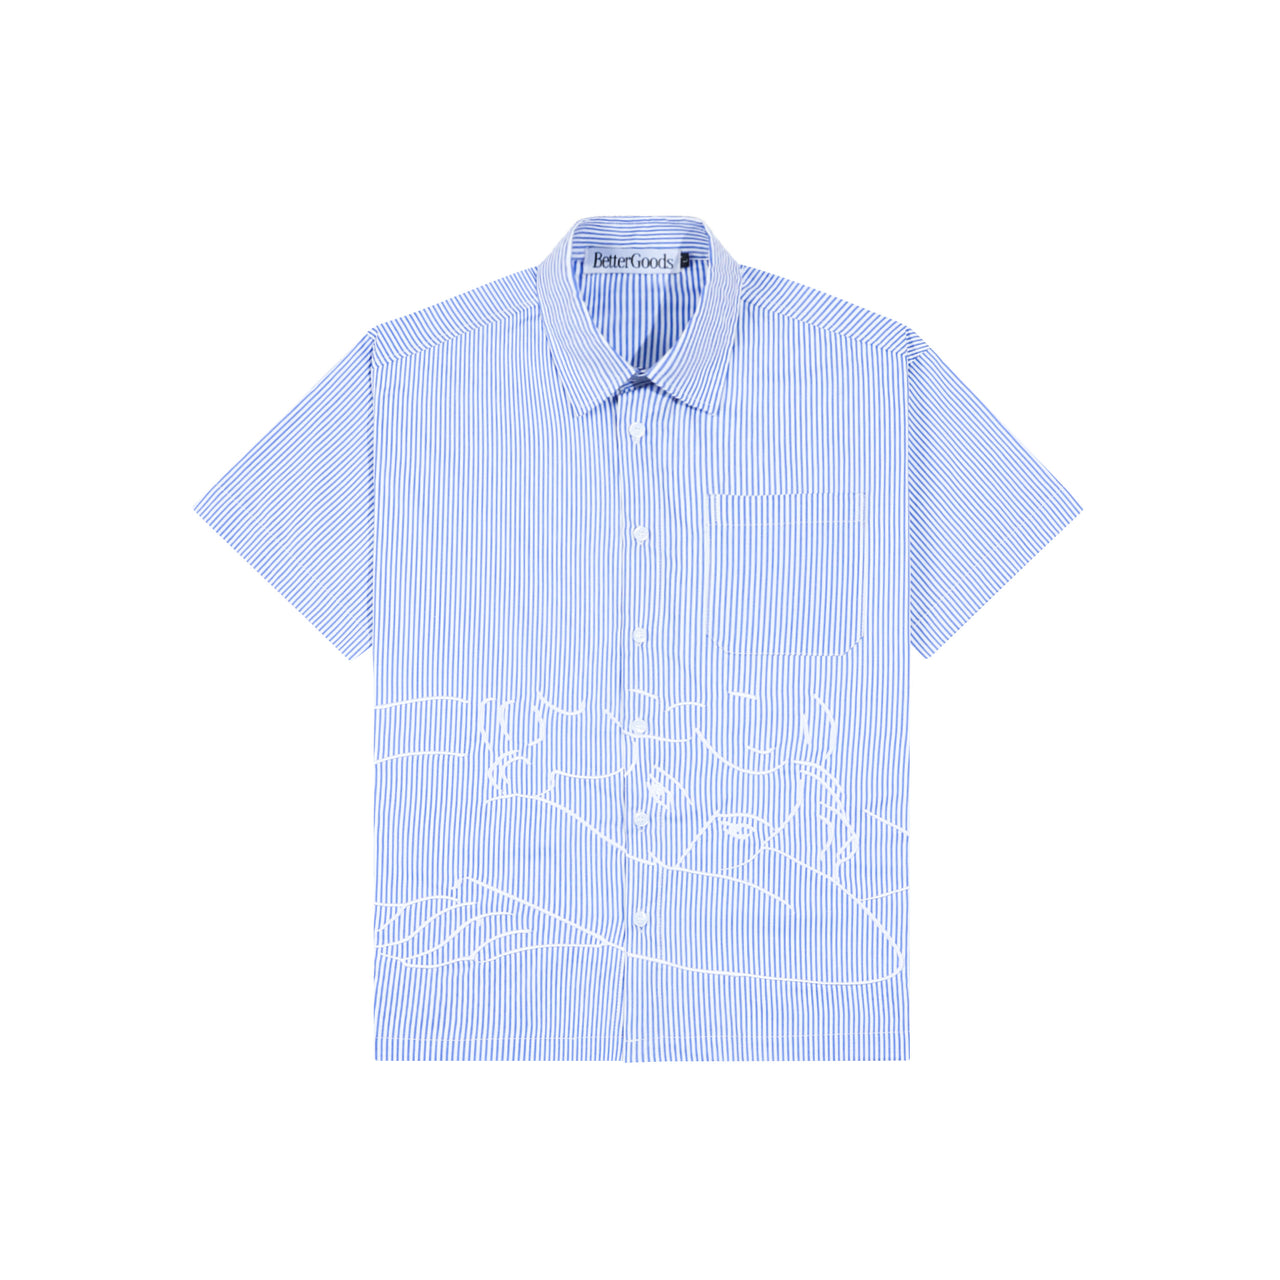 Better Goods - Lay Oxford Short Sleeve Shirt Blue